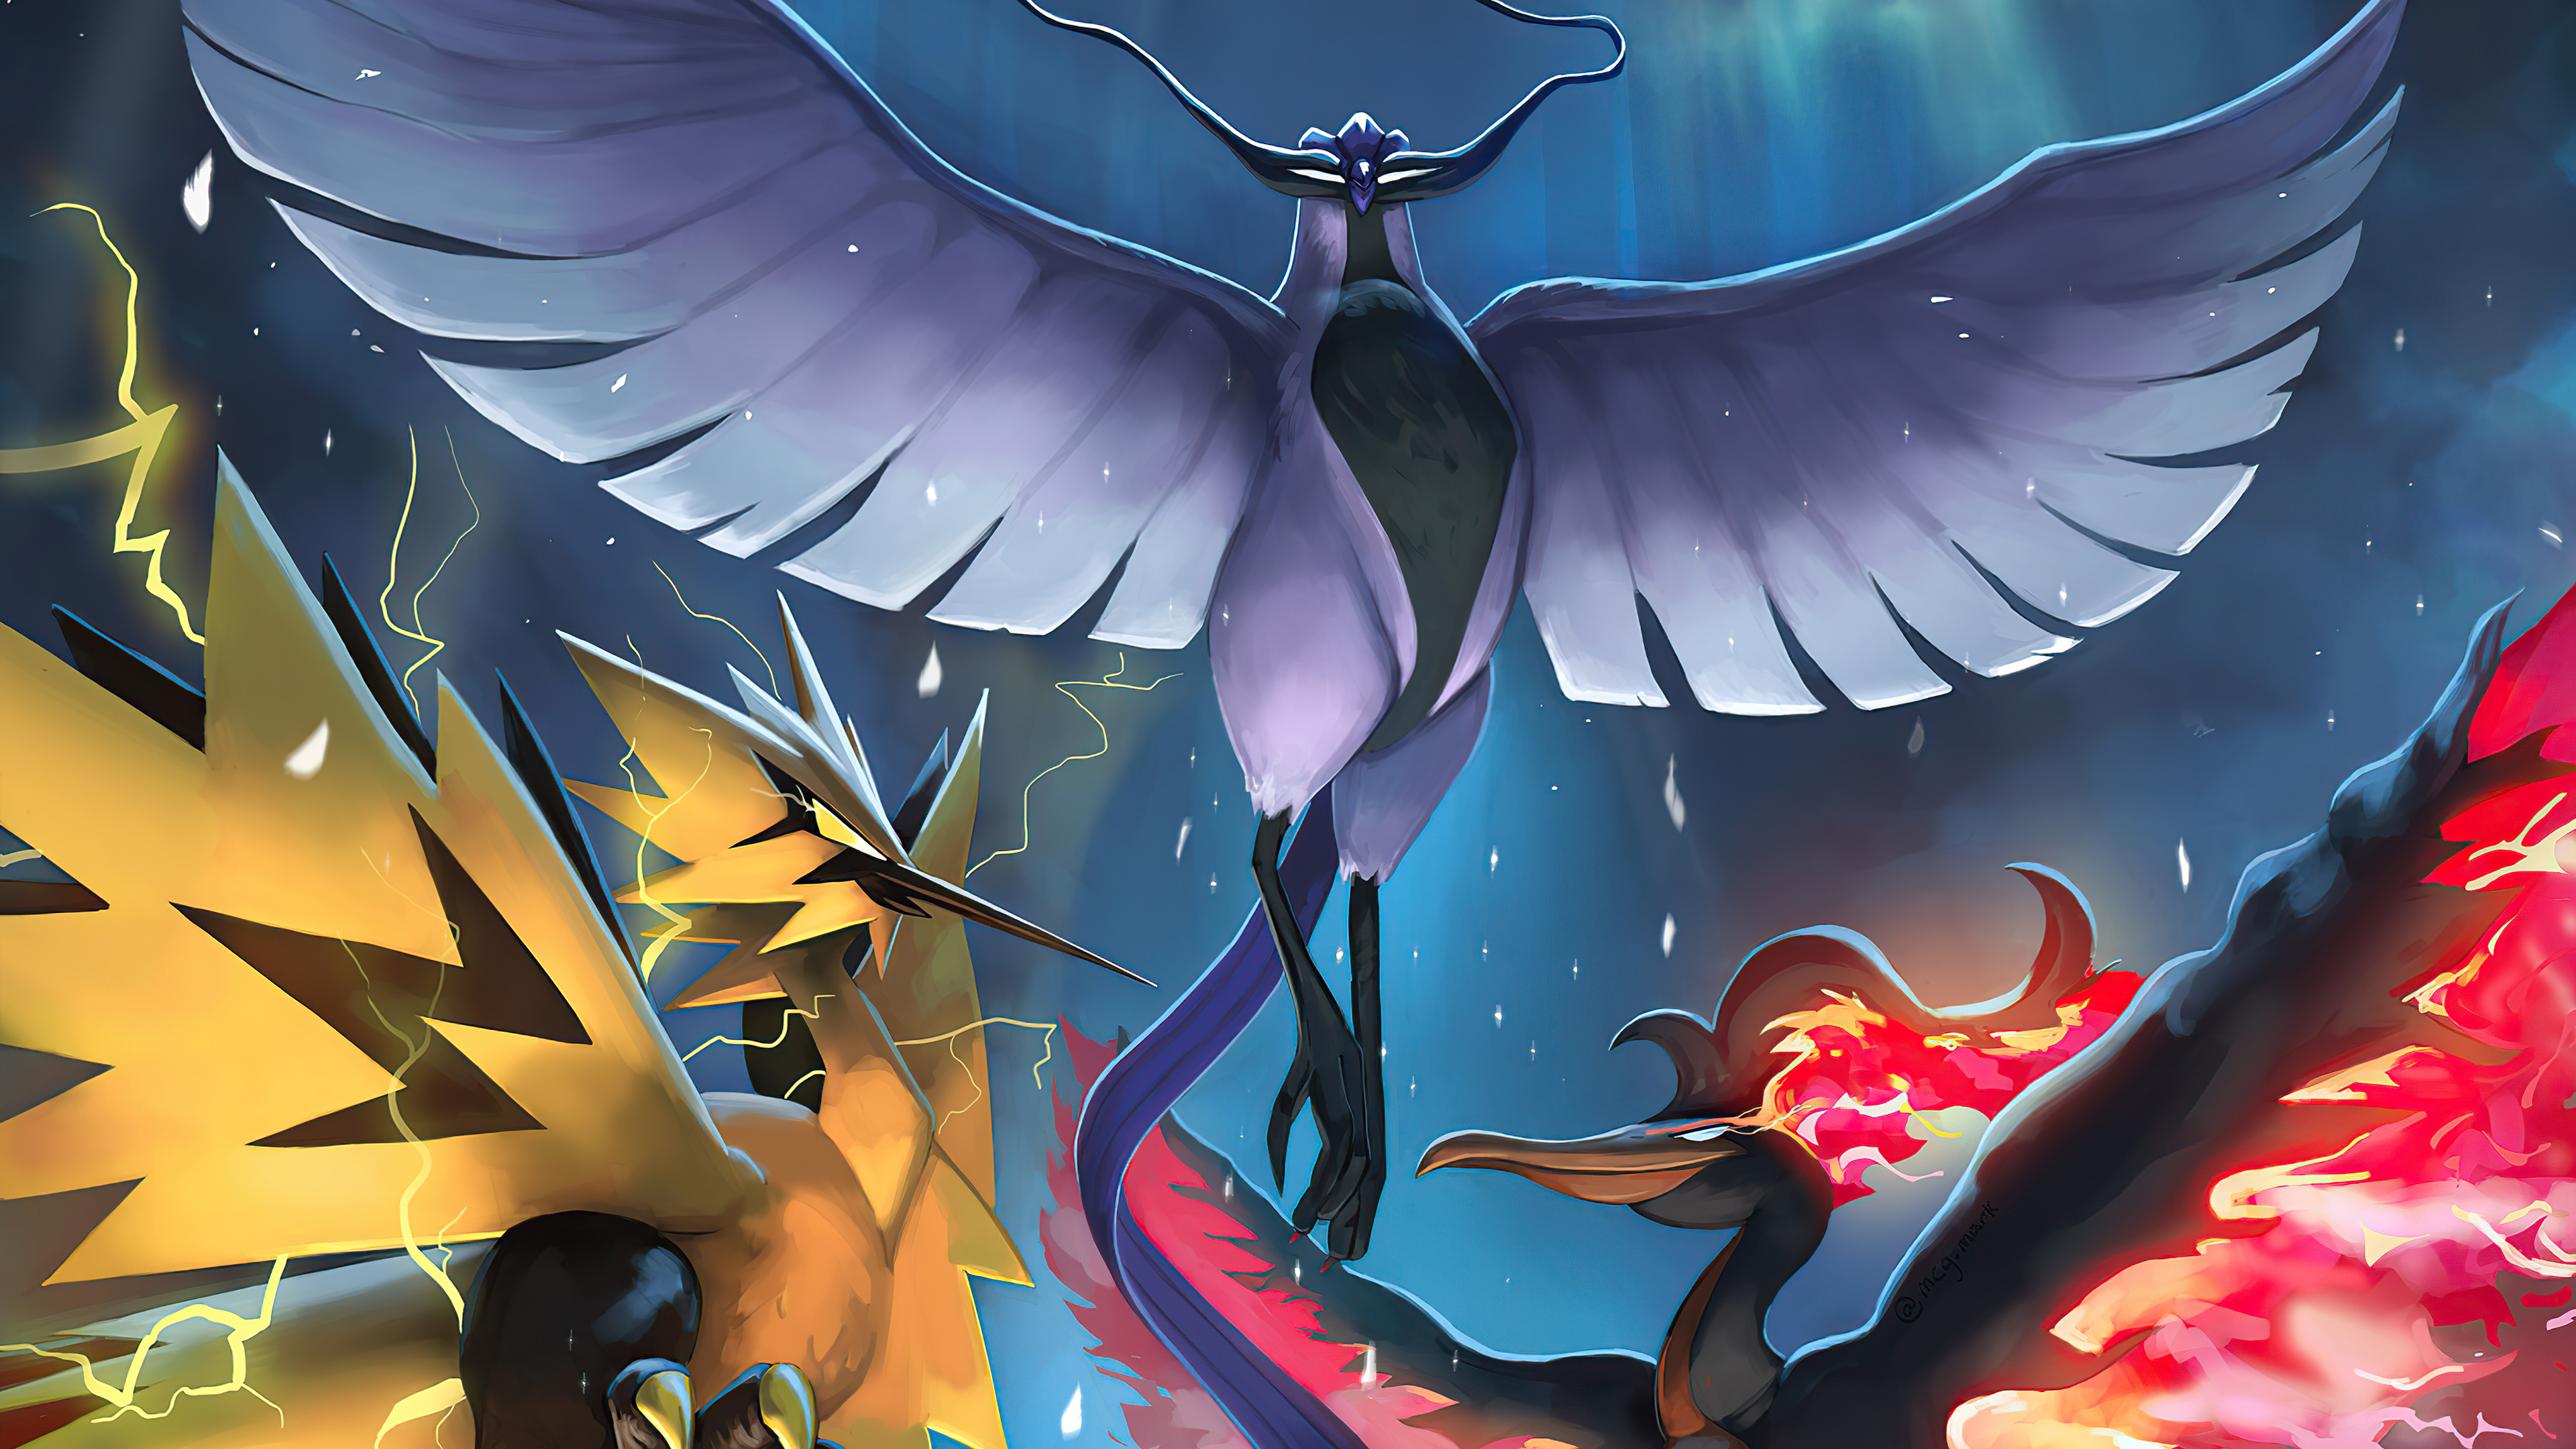 Download mobile wallpaper Anime, Pokémon, Articuno (Pokémon), Zapdos (Pokémon), Moltres (Pokémon) for free.